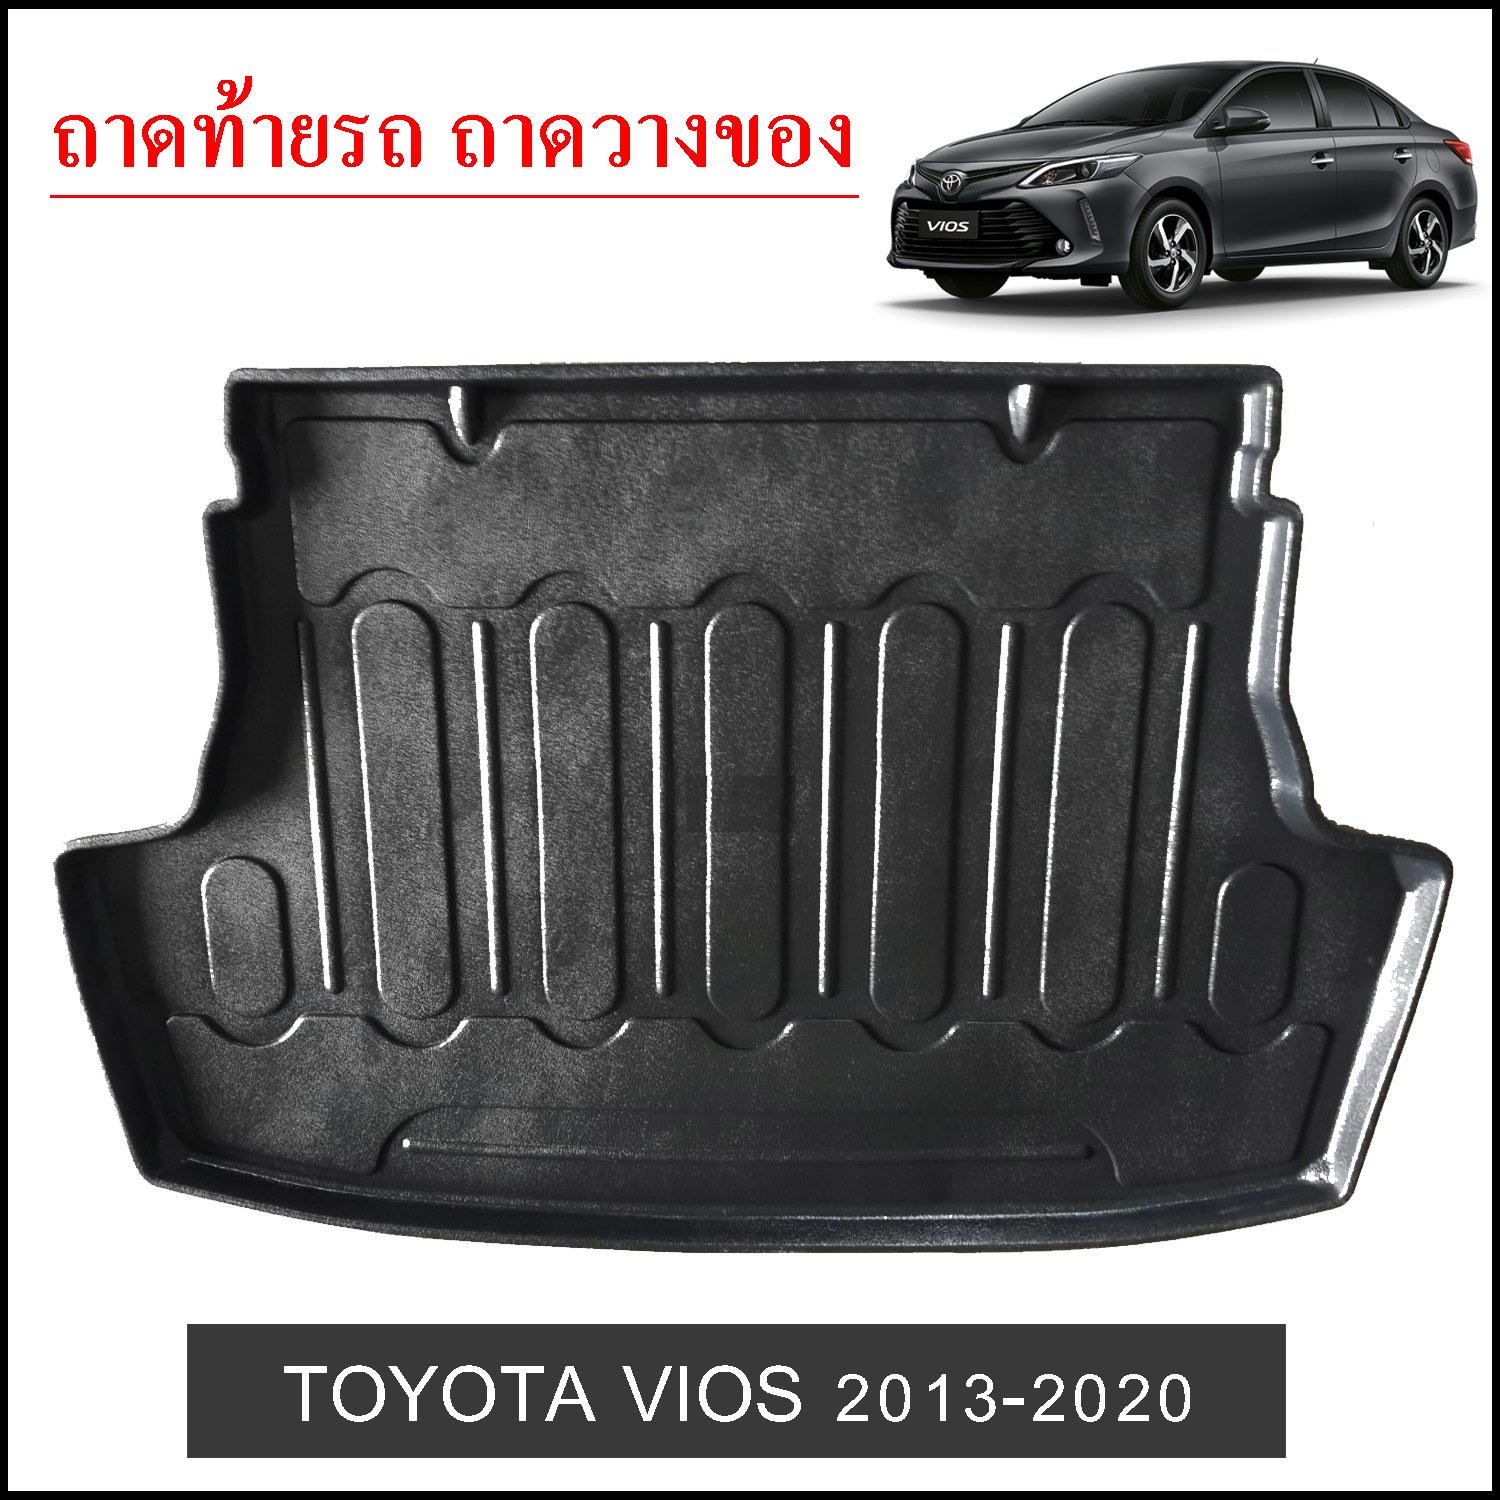 ถาดท้ายวางของ Toyota Vios 2013-2020